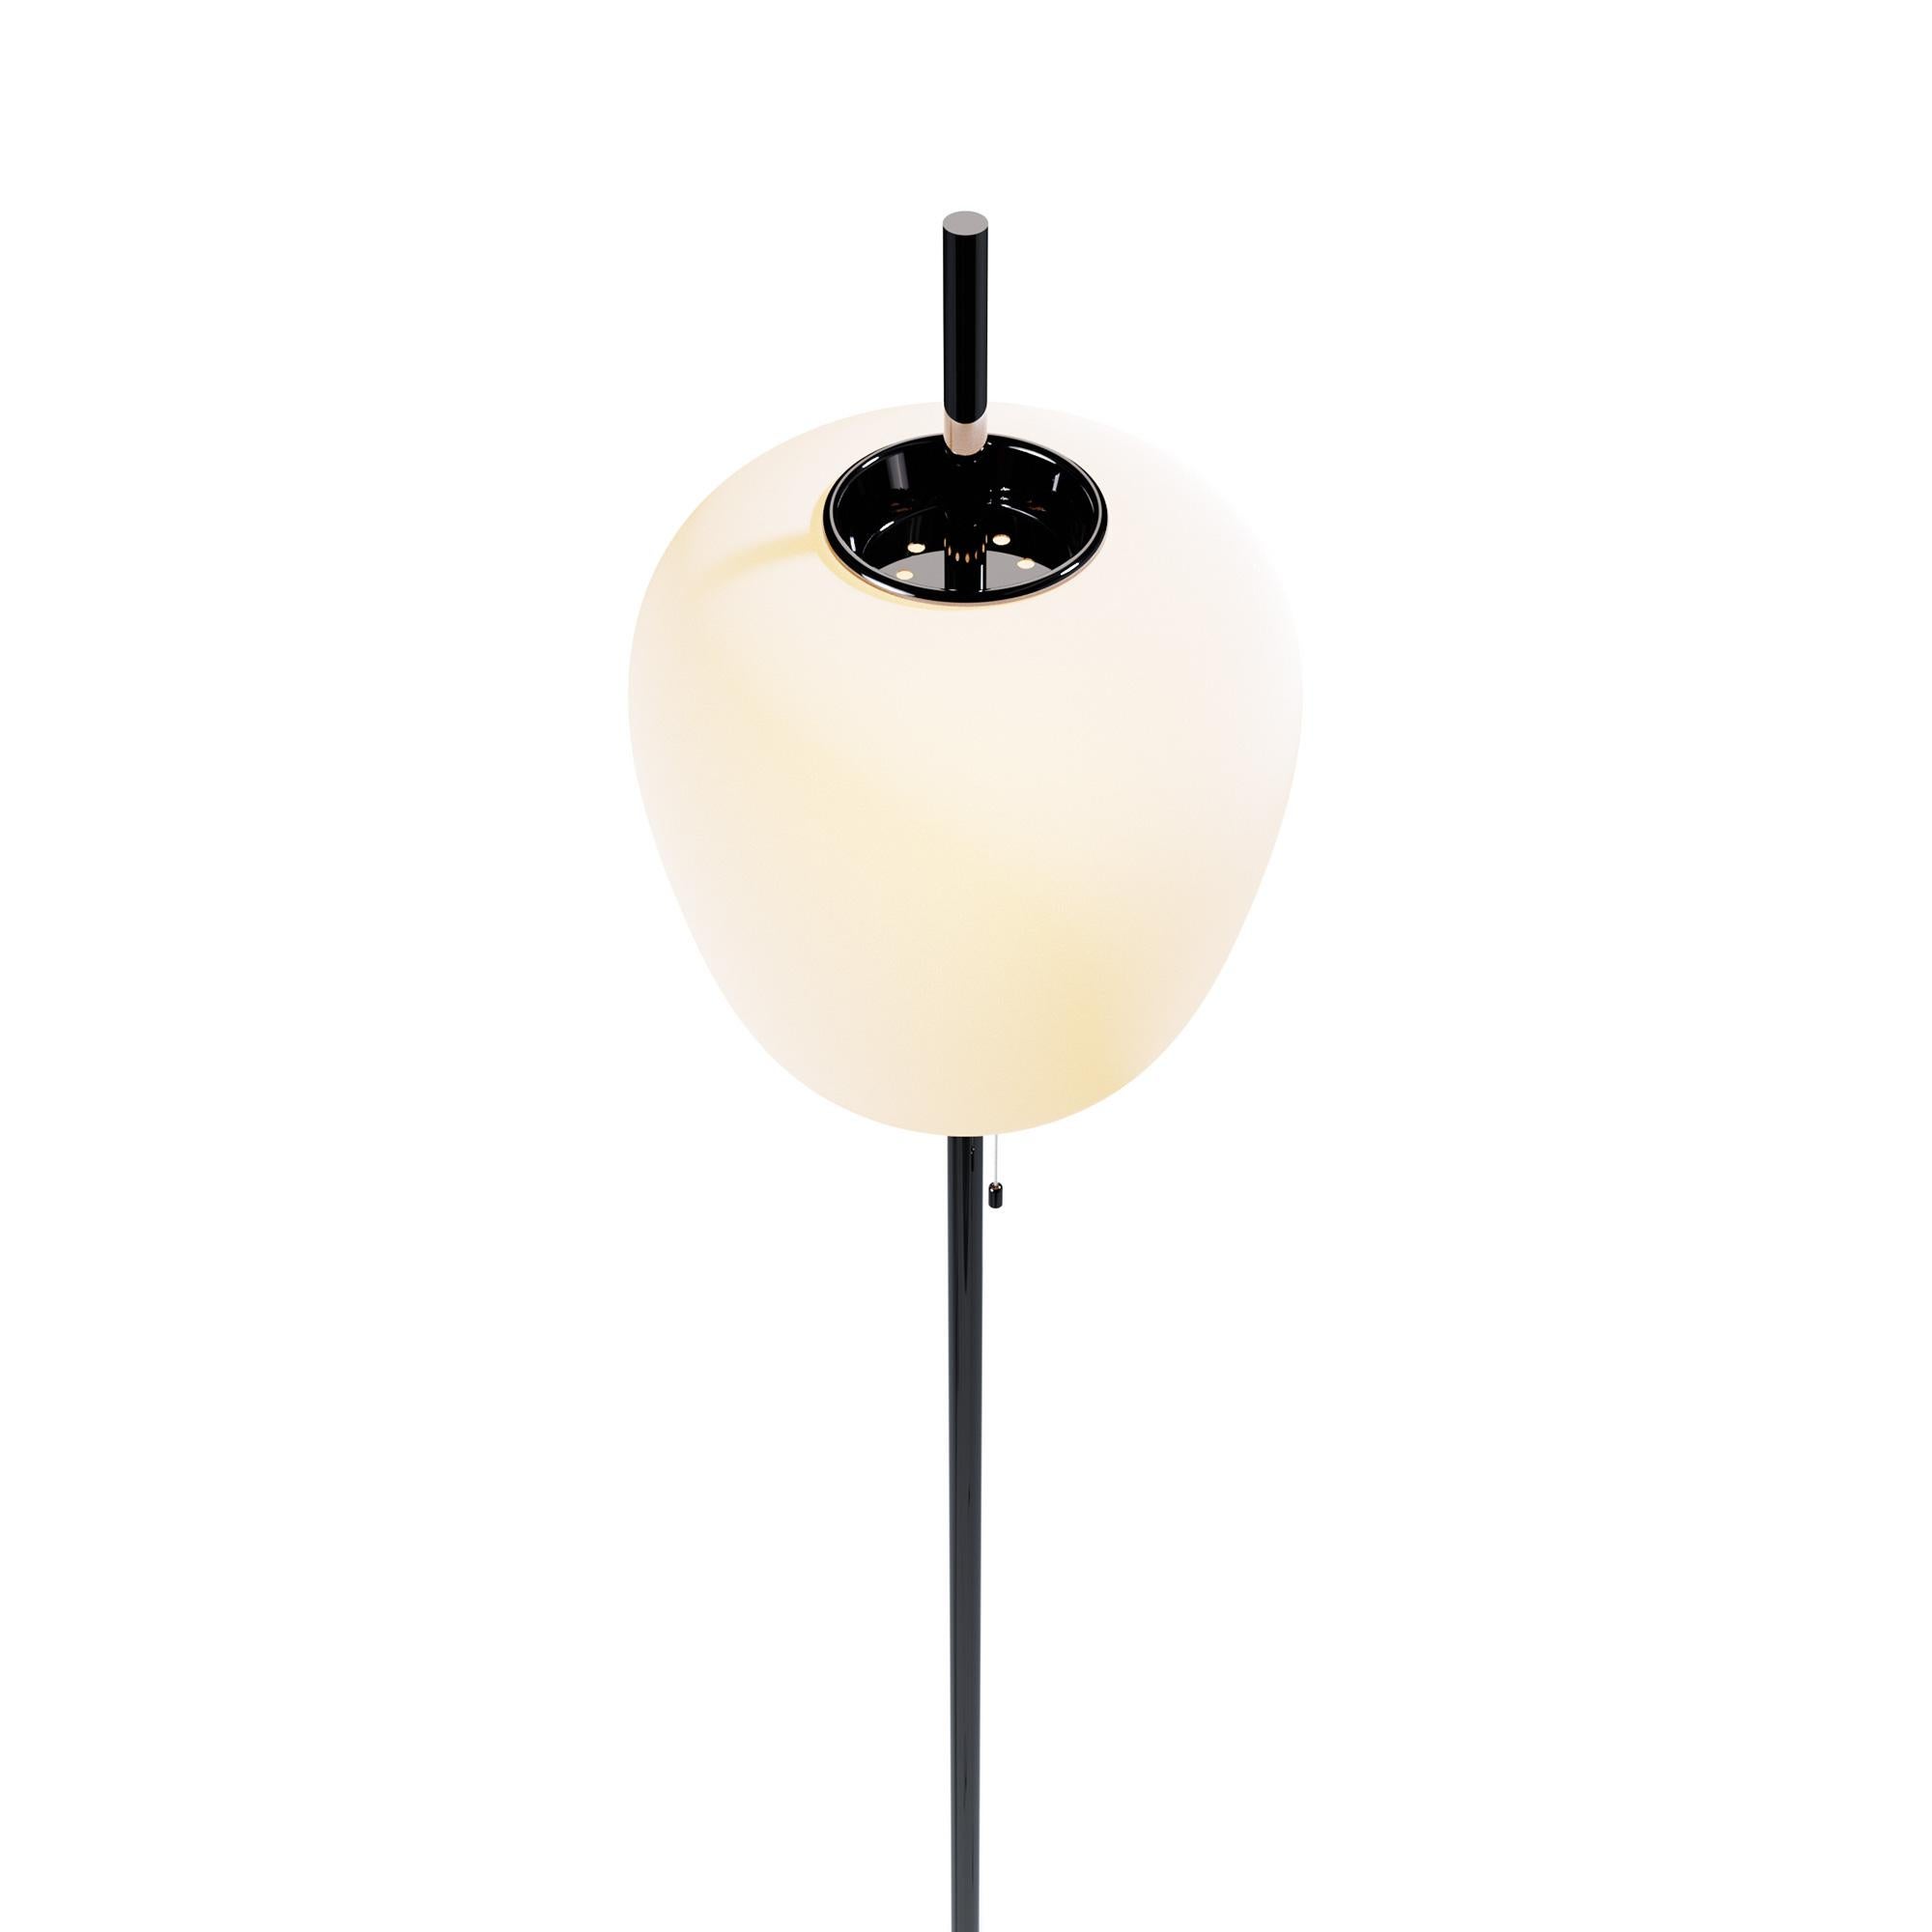 French Large Joseph-André Motte J14 Floor Lamp in Gunmetal & Black Marble for Disderot For Sale